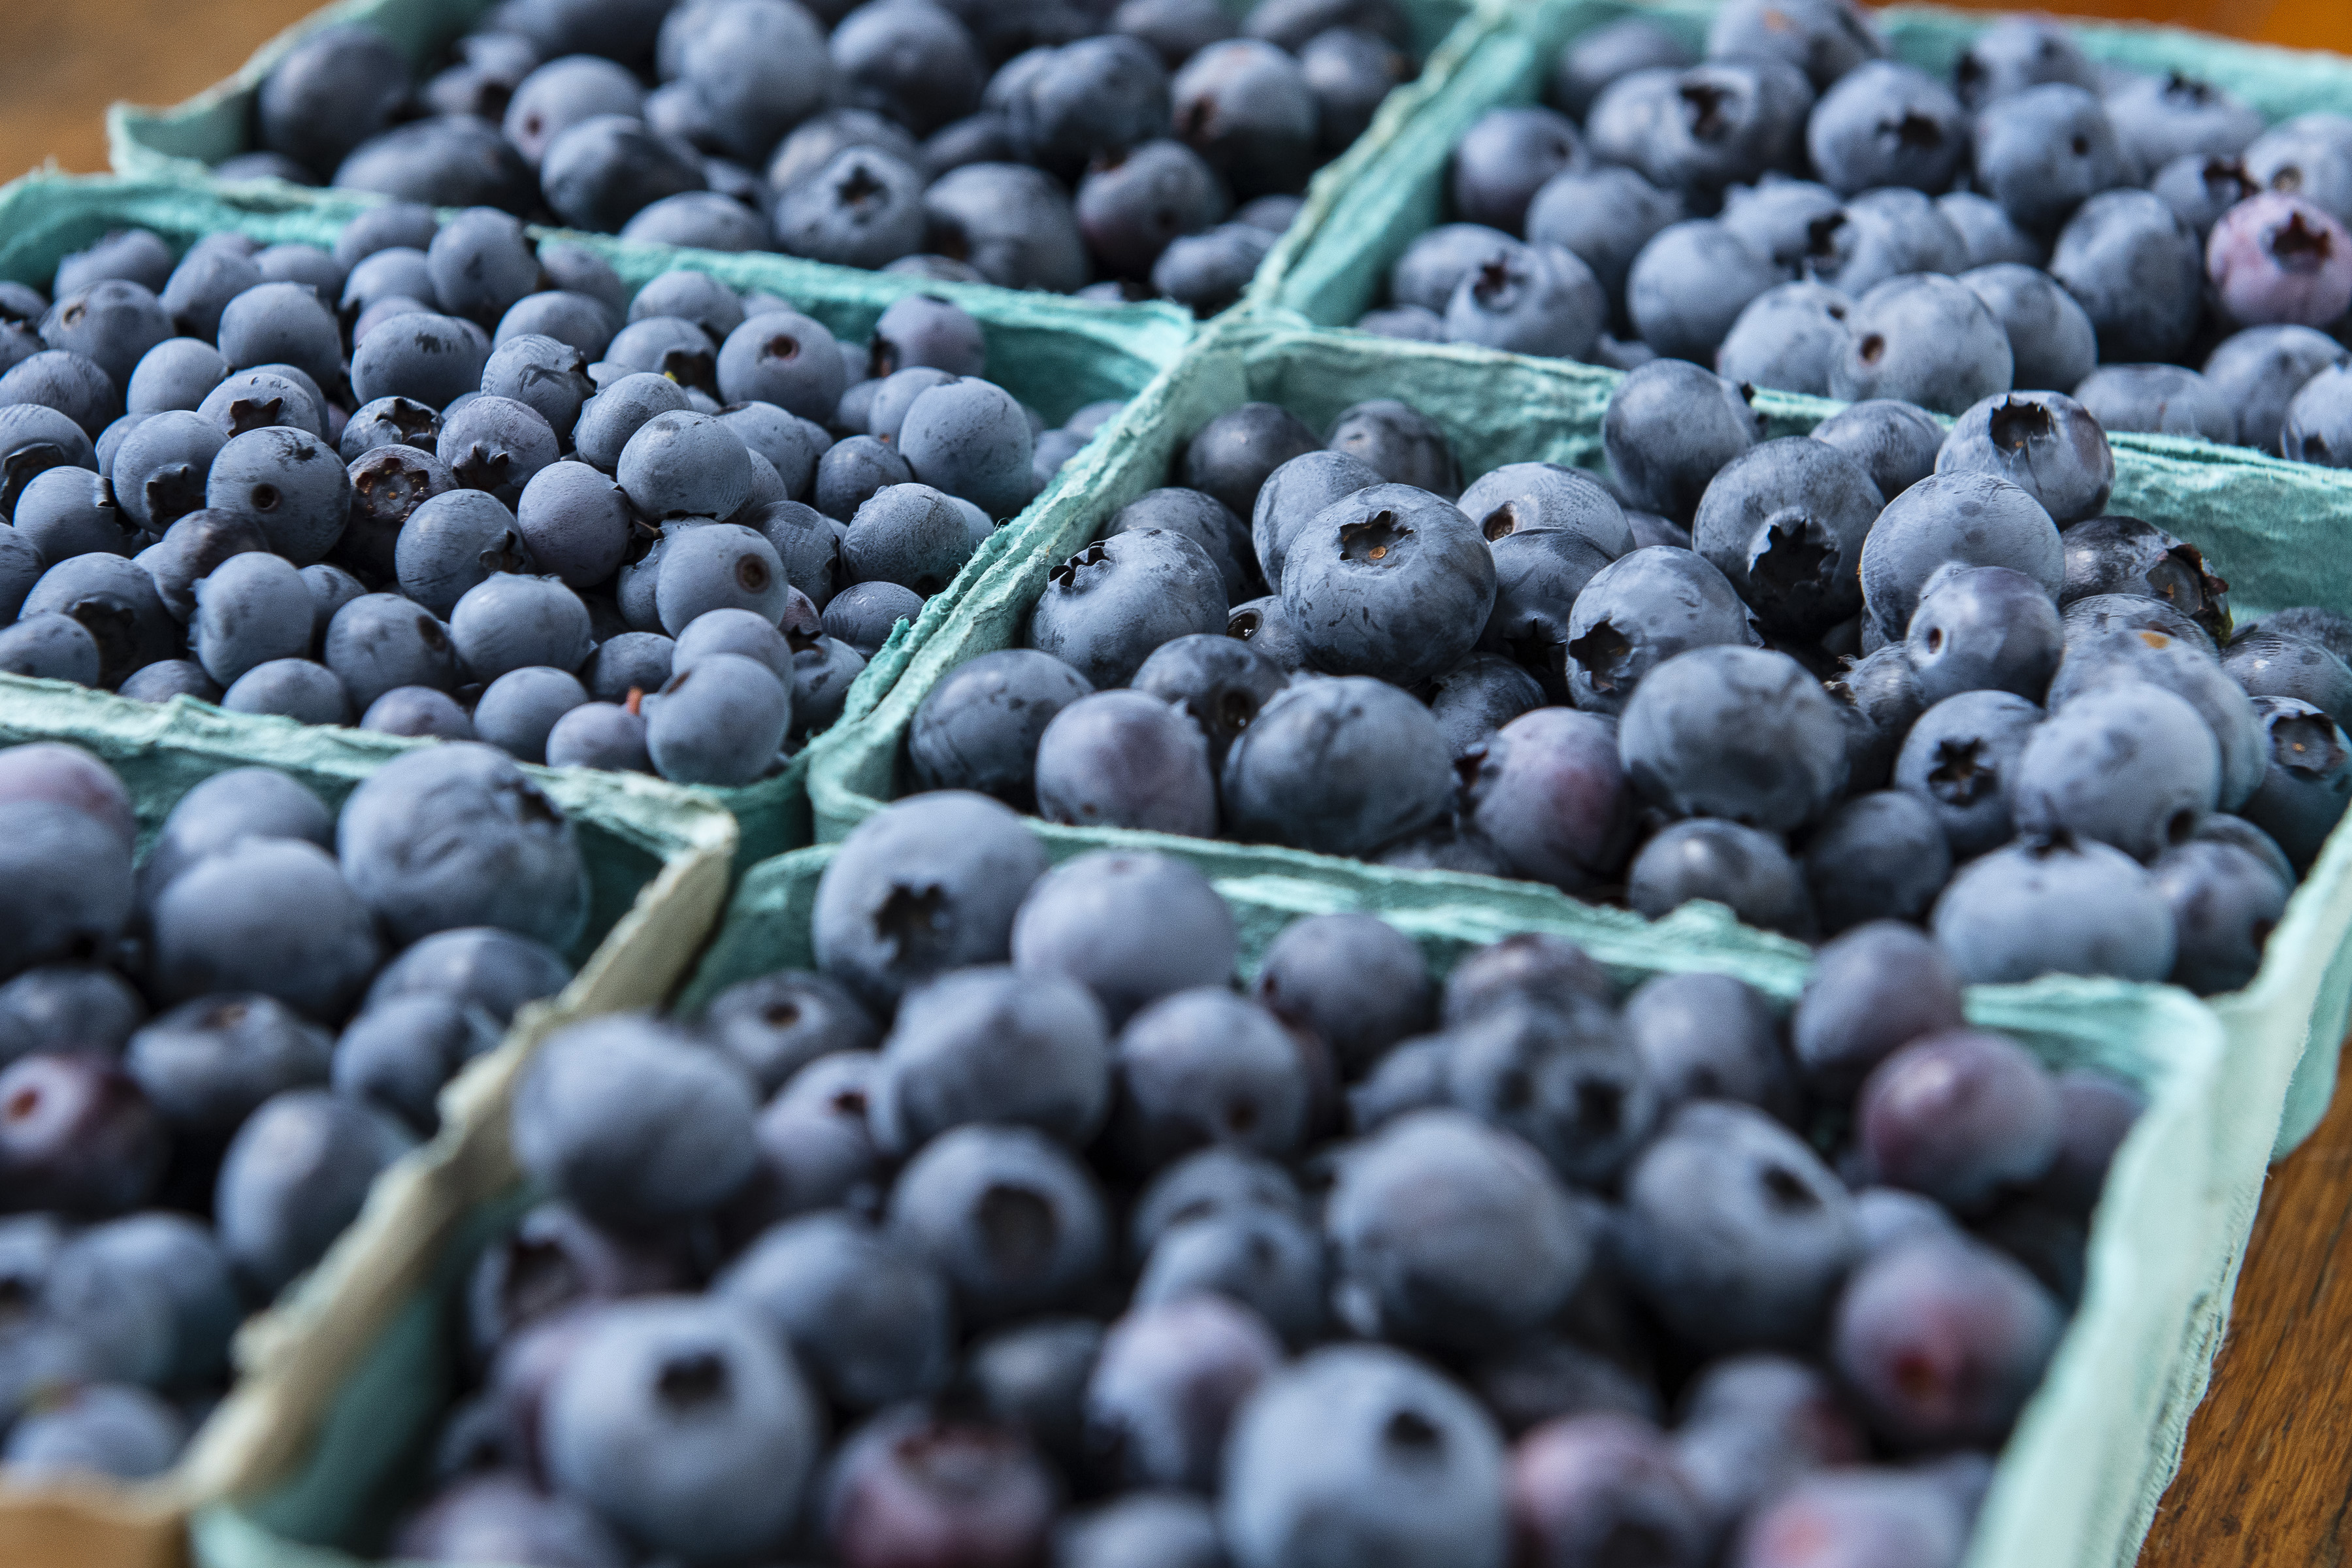 Massachusetts blueberries